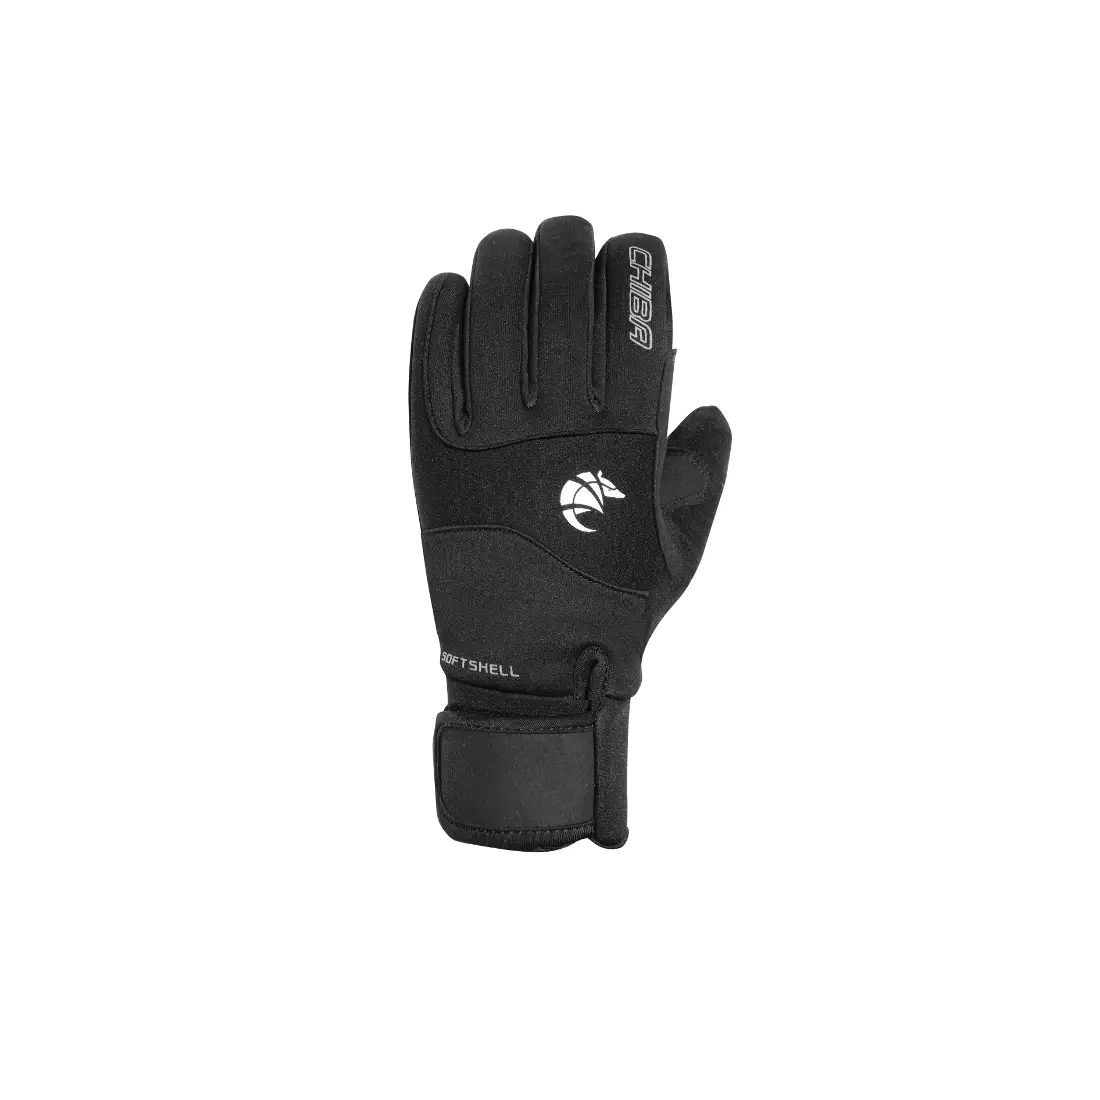 Zimní cyklistické rukavice CHIBA CLASSIC, černá 31528